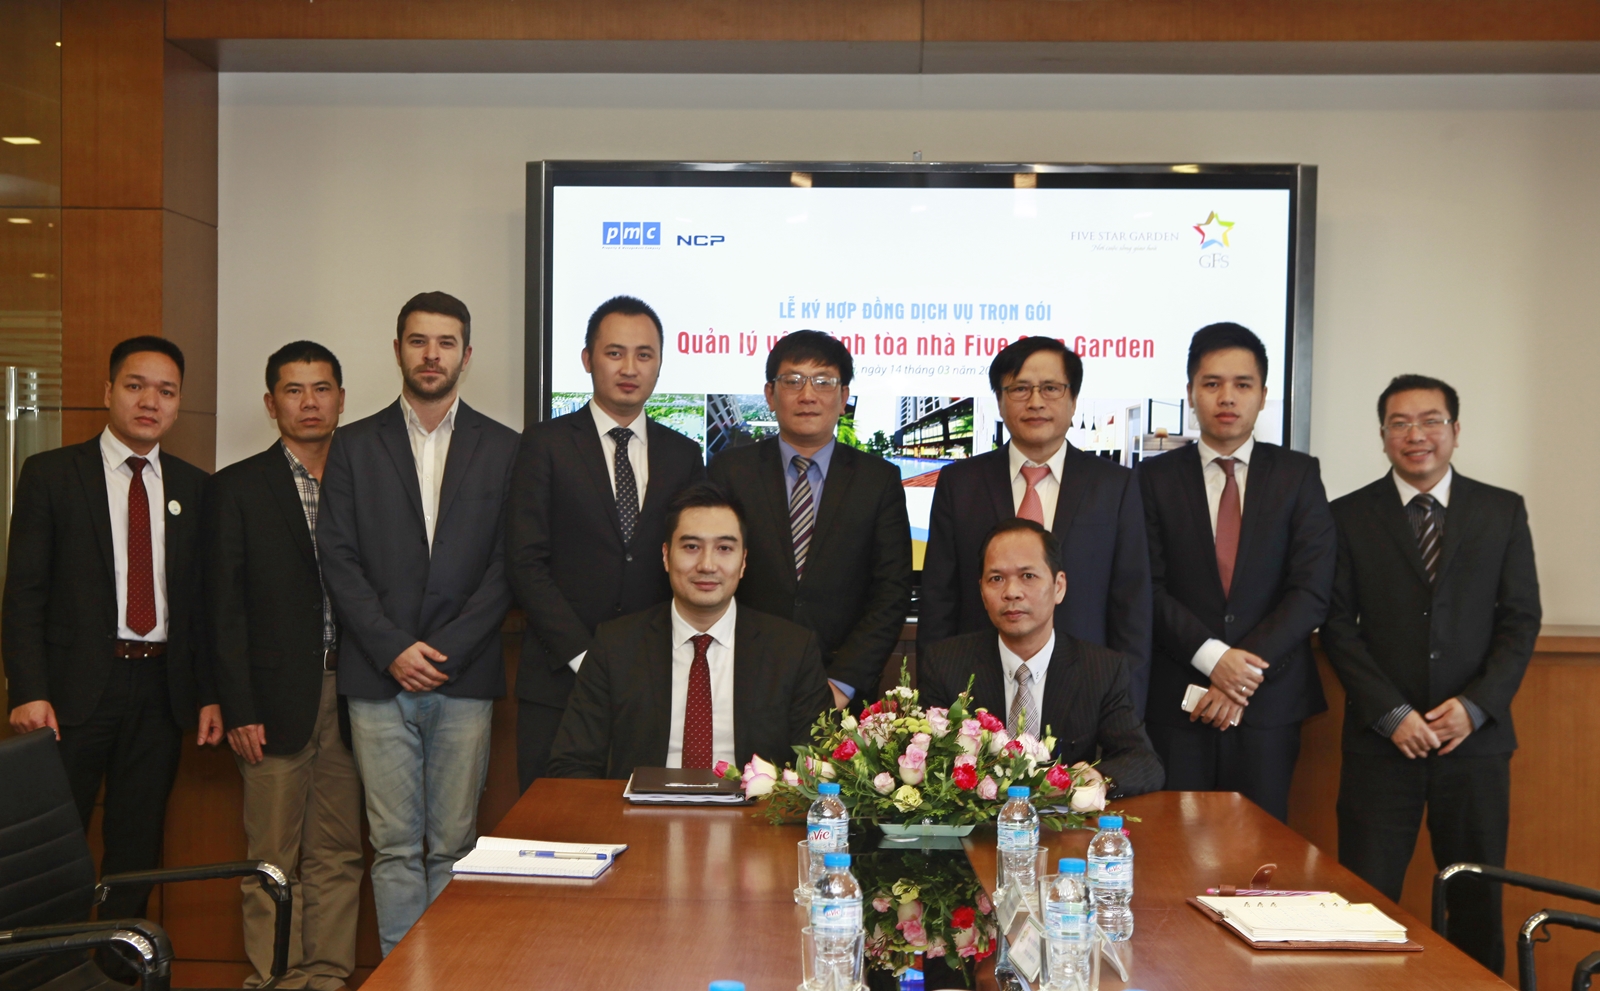 Five Star Kim Giang và PMC ký kết hợp tác quản lý Tòa nhà Five Star Garden         